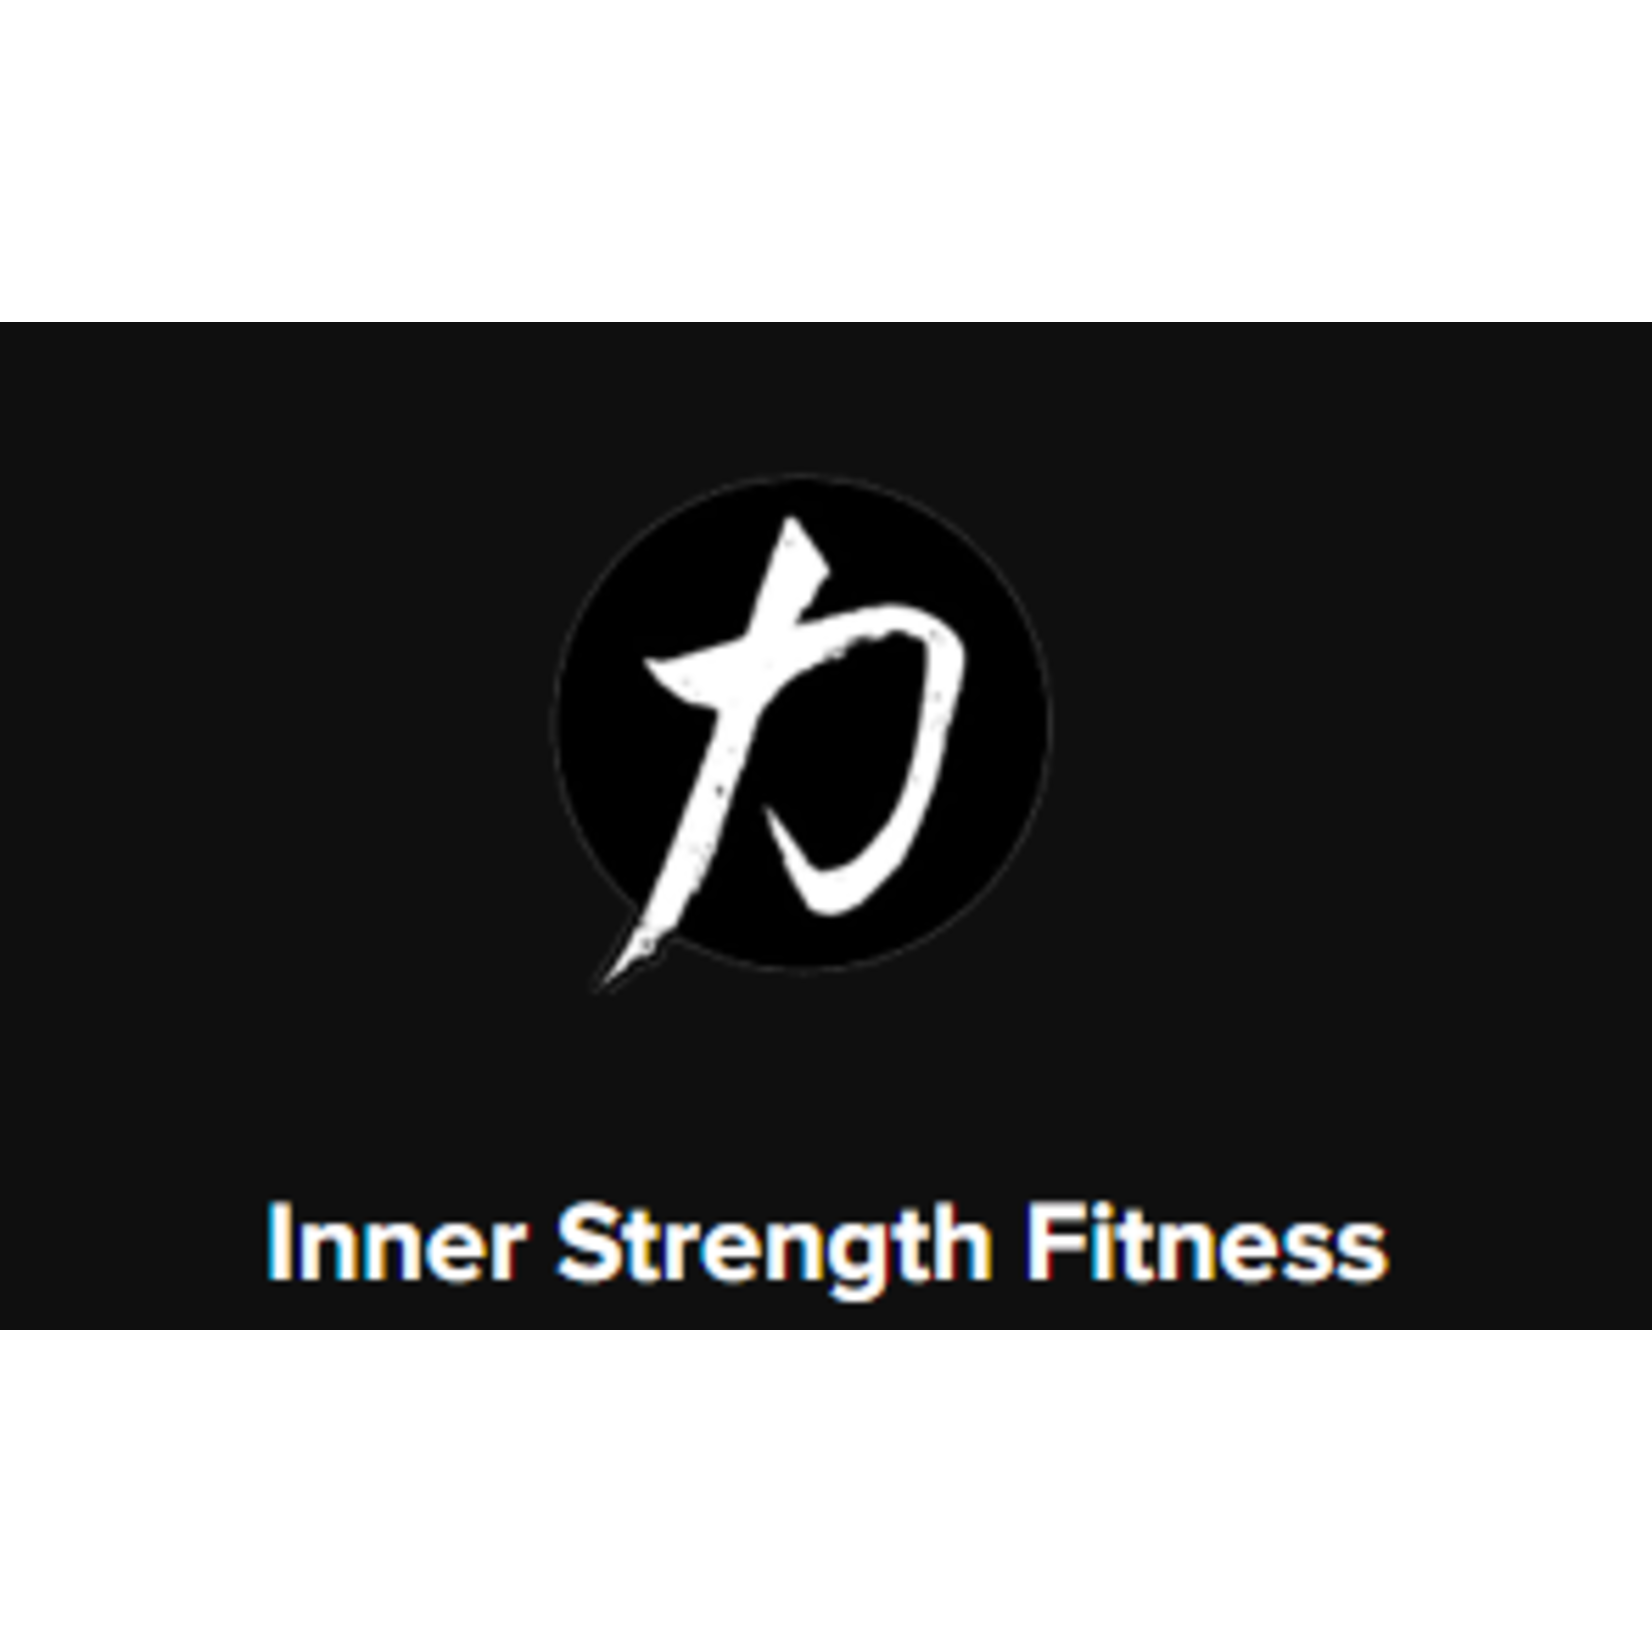 Inner Strength Fitness @ Studio 222 Gym Inner Strength Fitness @ Studio 222 Gym $45 -  (60) min Fitness Session